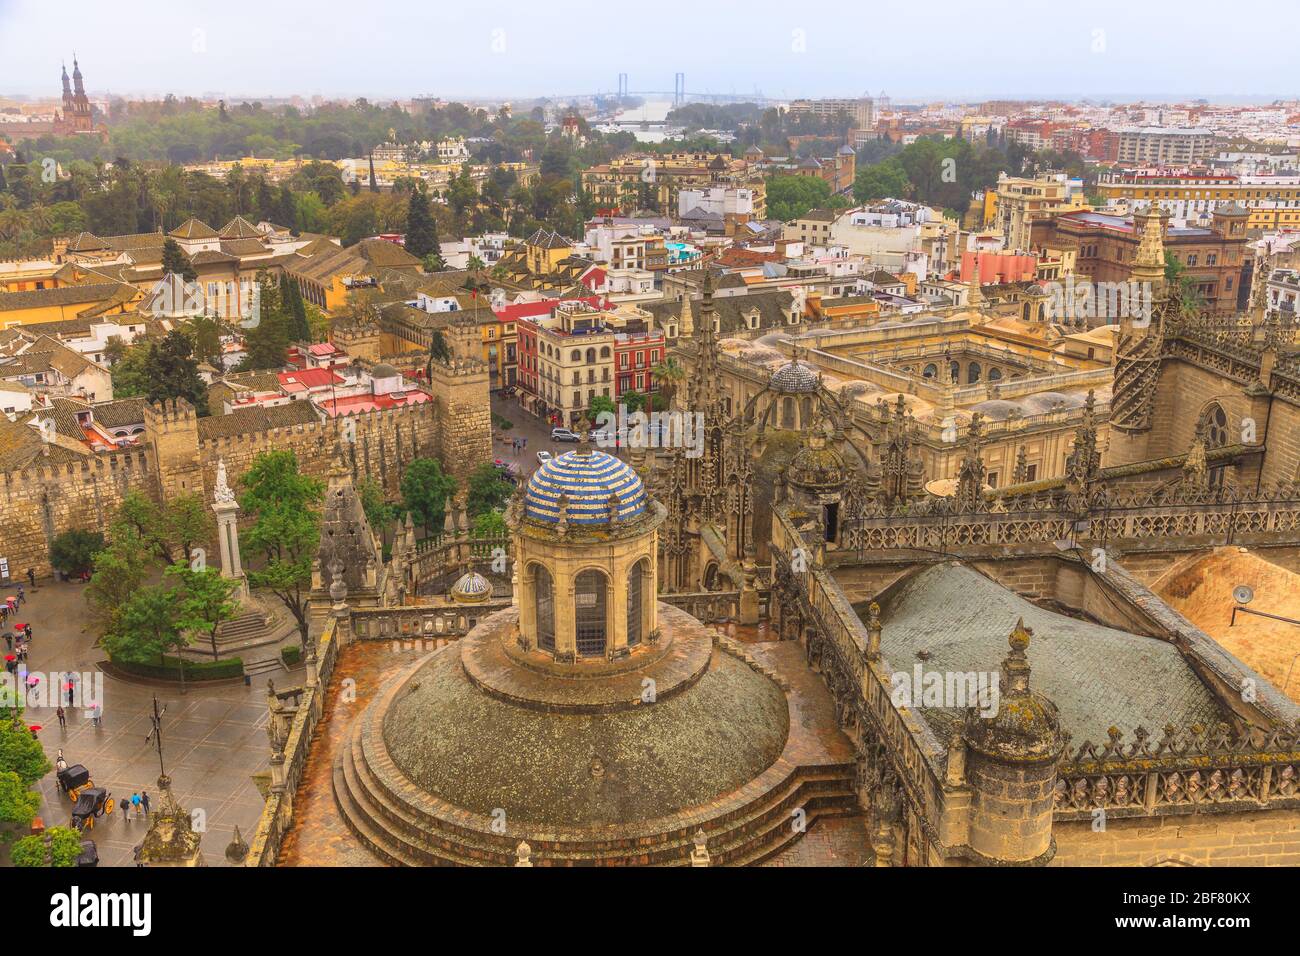 Vista aerea dello skyline di Siviglia, della Cattedrale di Santa Maria del See di Siviglia dalla torre Giralda, Plaza del Triunfo o piazza trionfo e mura e. Foto Stock